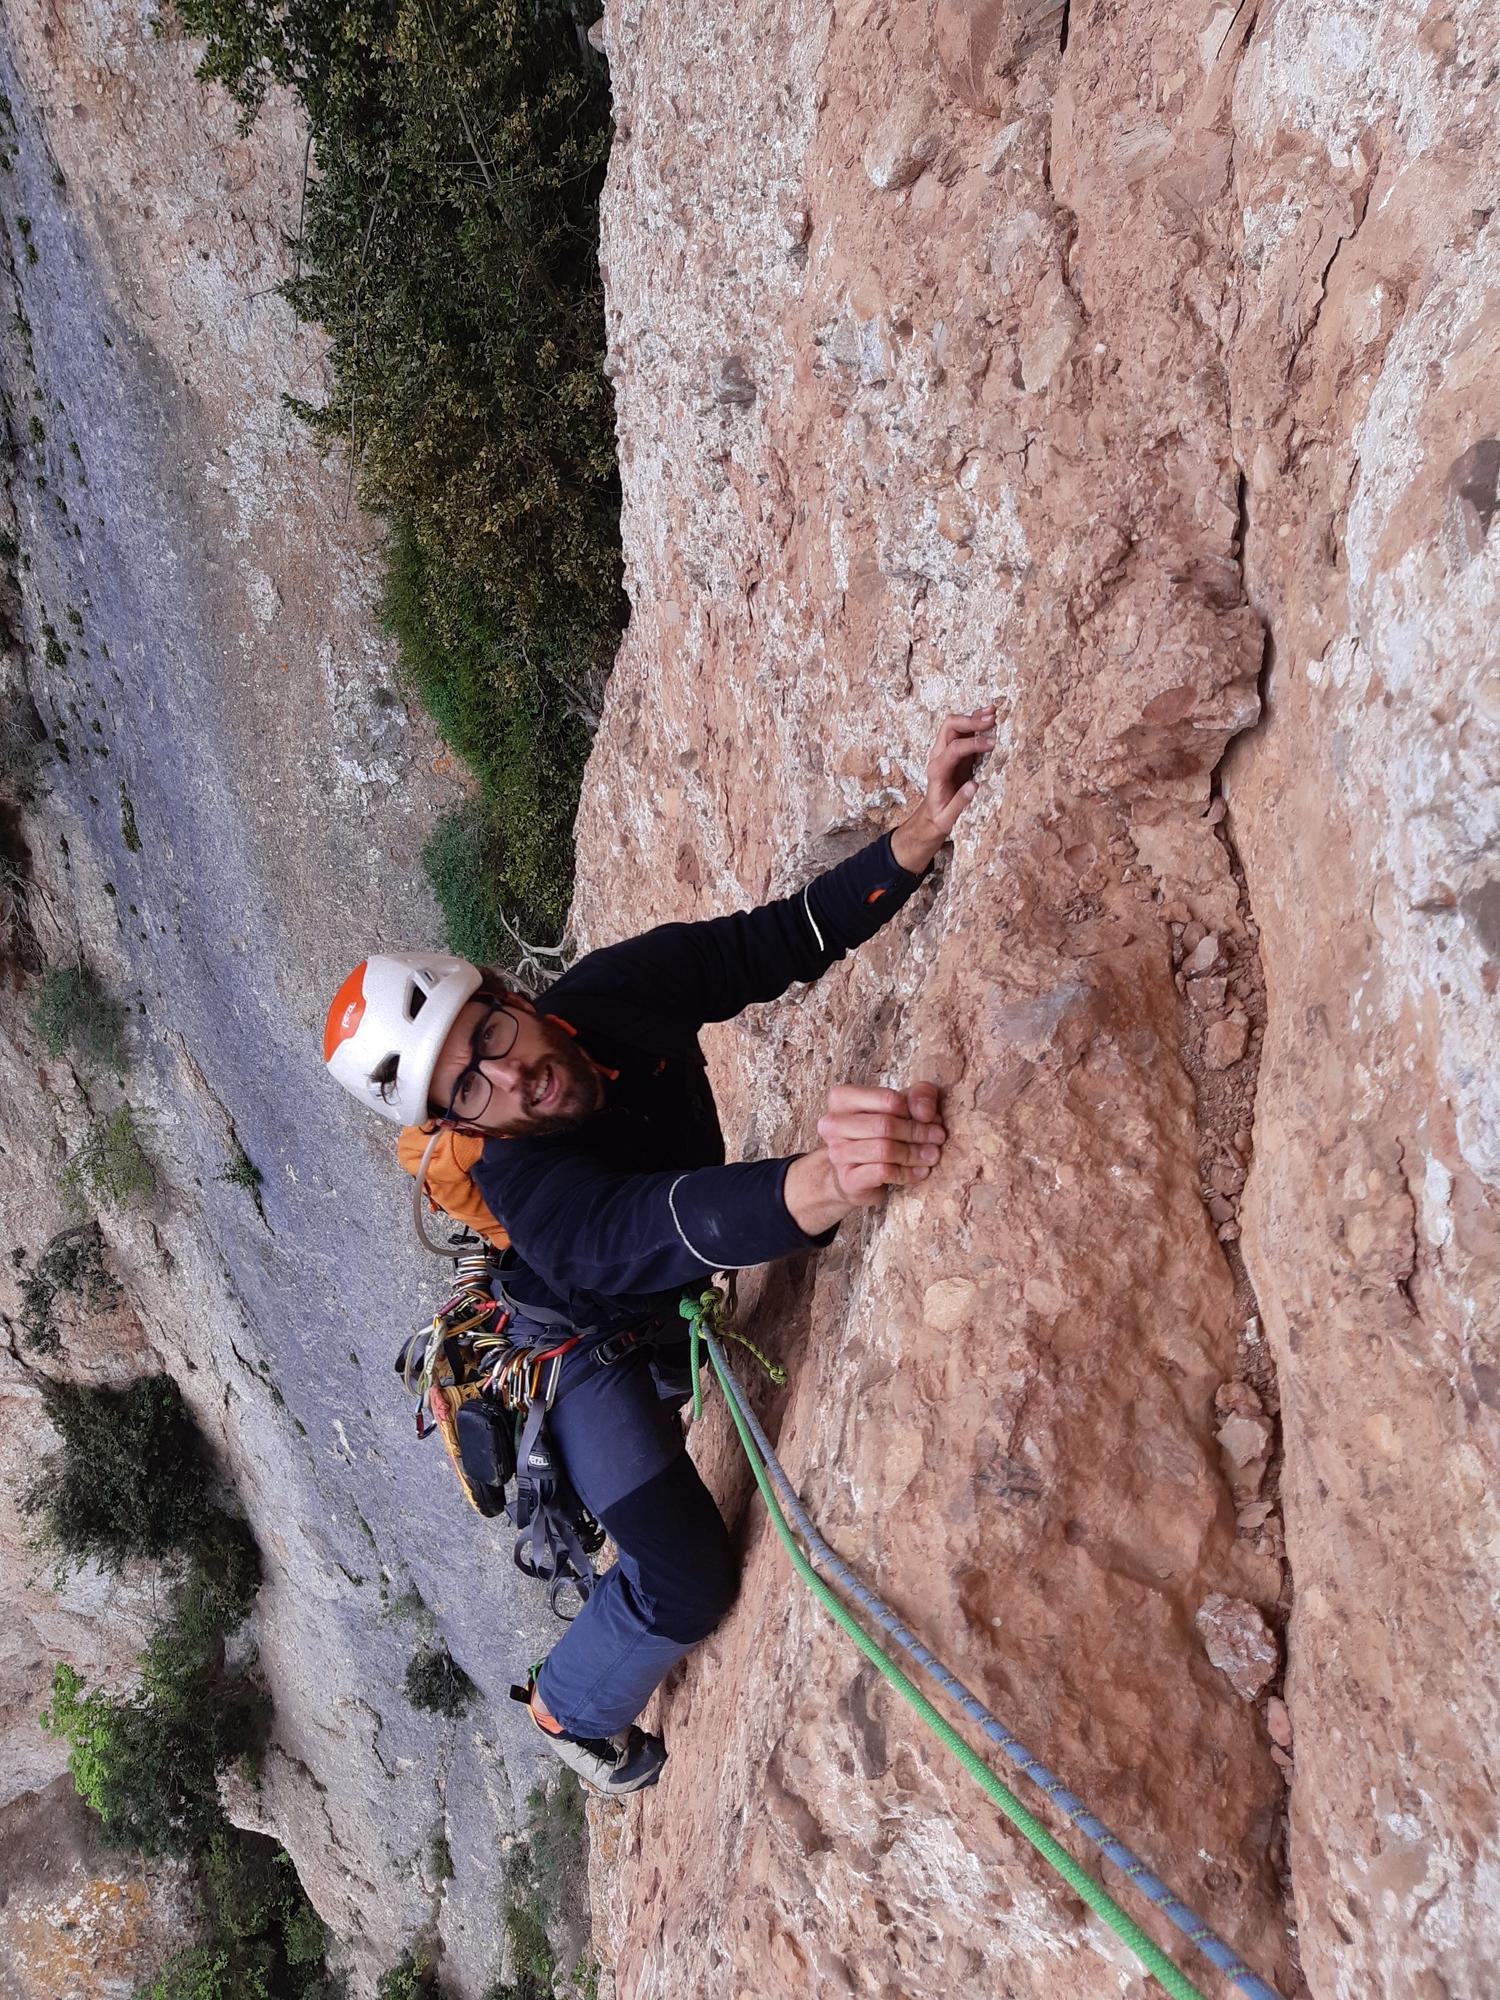 Imatges escalant a Montserrat de Jordi Pina, autor del llibre "Metres avall"